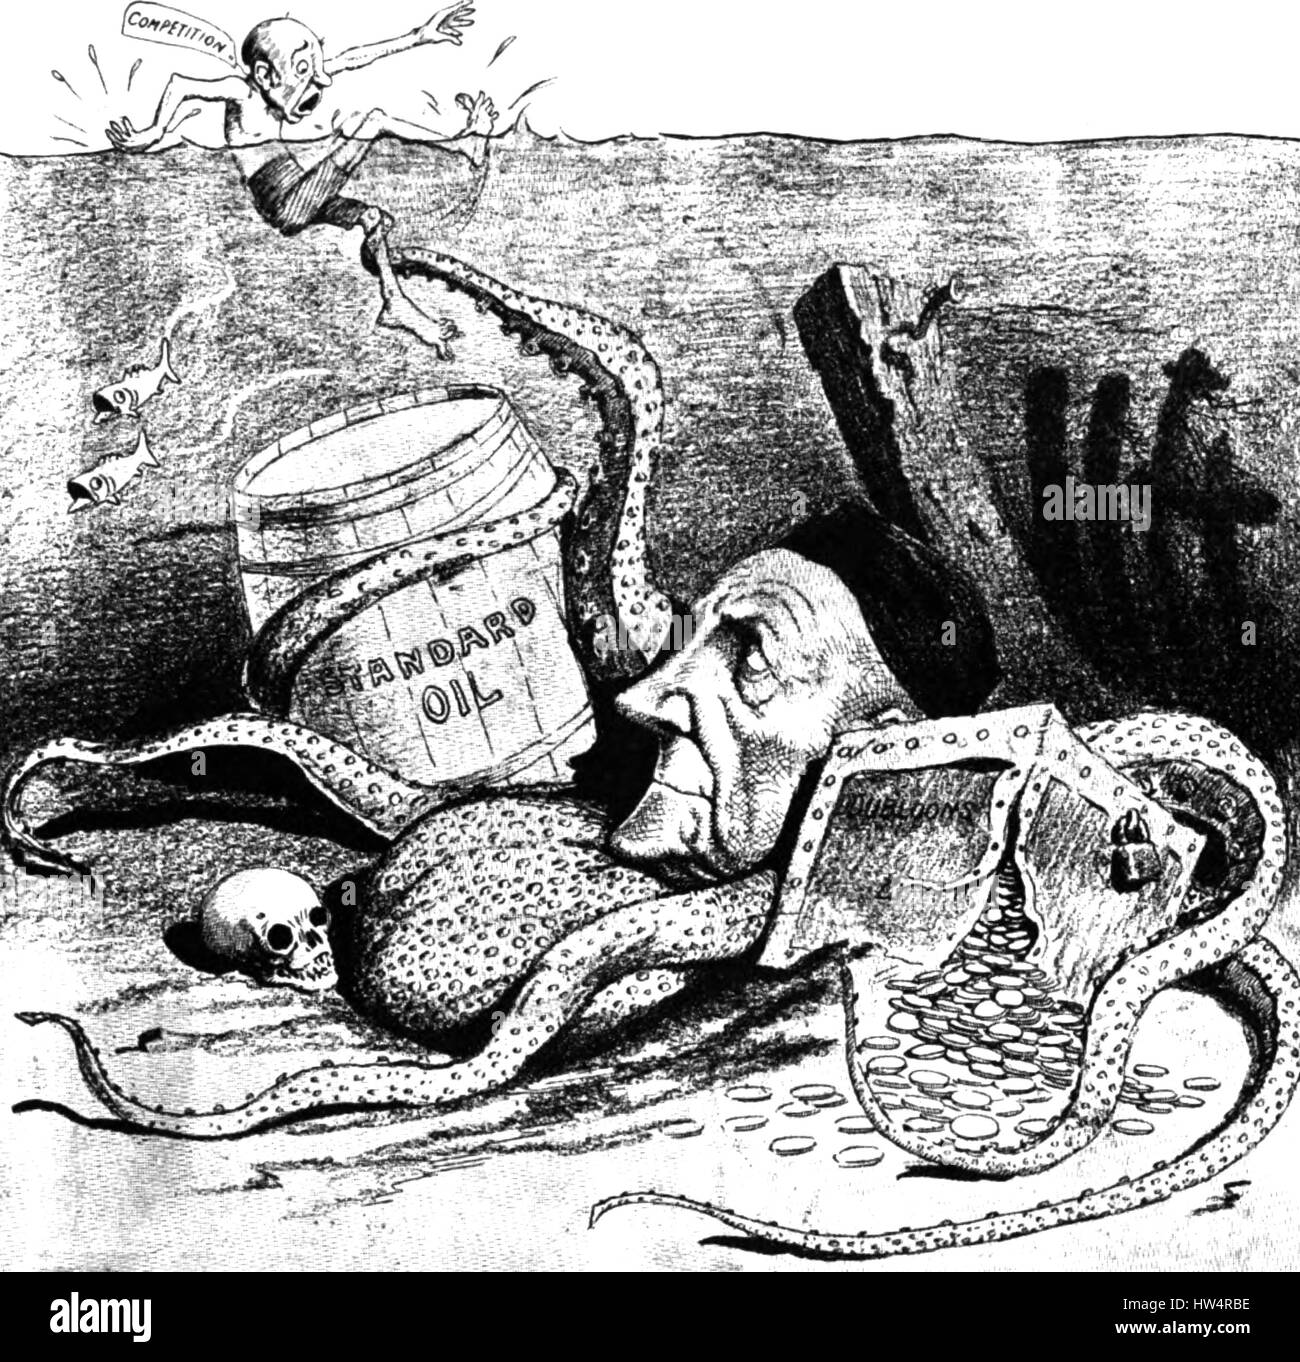 La Standard Oil Company satirisé dans un numéro de 1906 de l'American Arena magazine. La comparaison de l'entreprise d'une pieuvre était courant dans les dessins animés. Banque D'Images